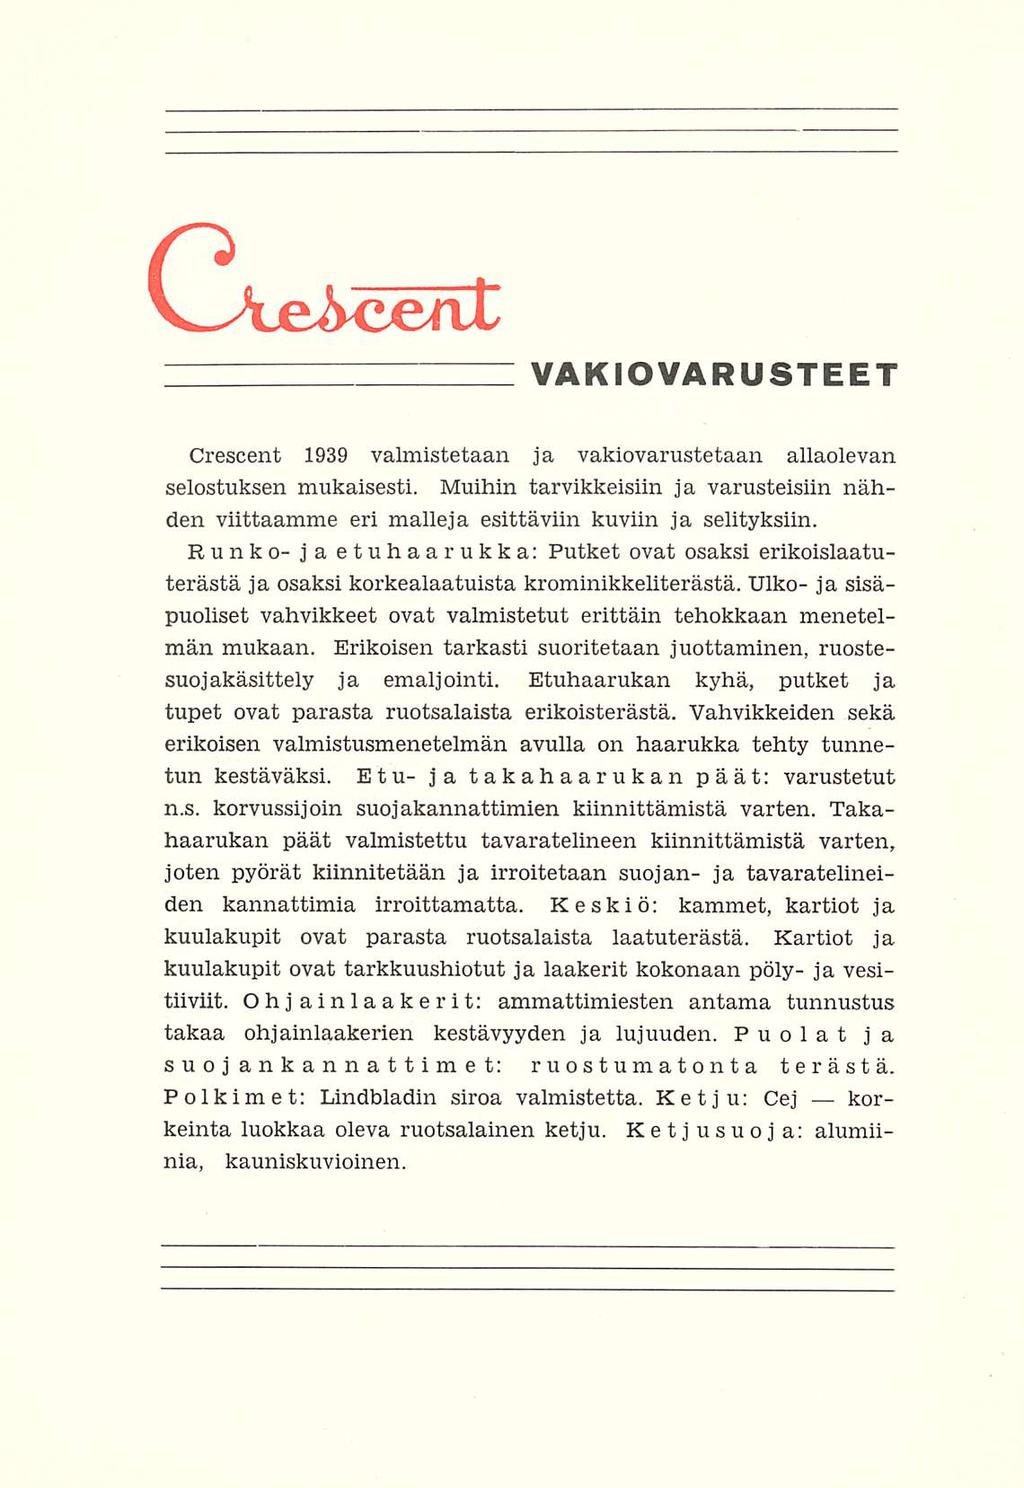 V-Ae&cenl VAKIOVARUSTEET Crescent 1939 valmistetaan ja vakiovarustetaan allaolevan selostuksen mukaisesti.